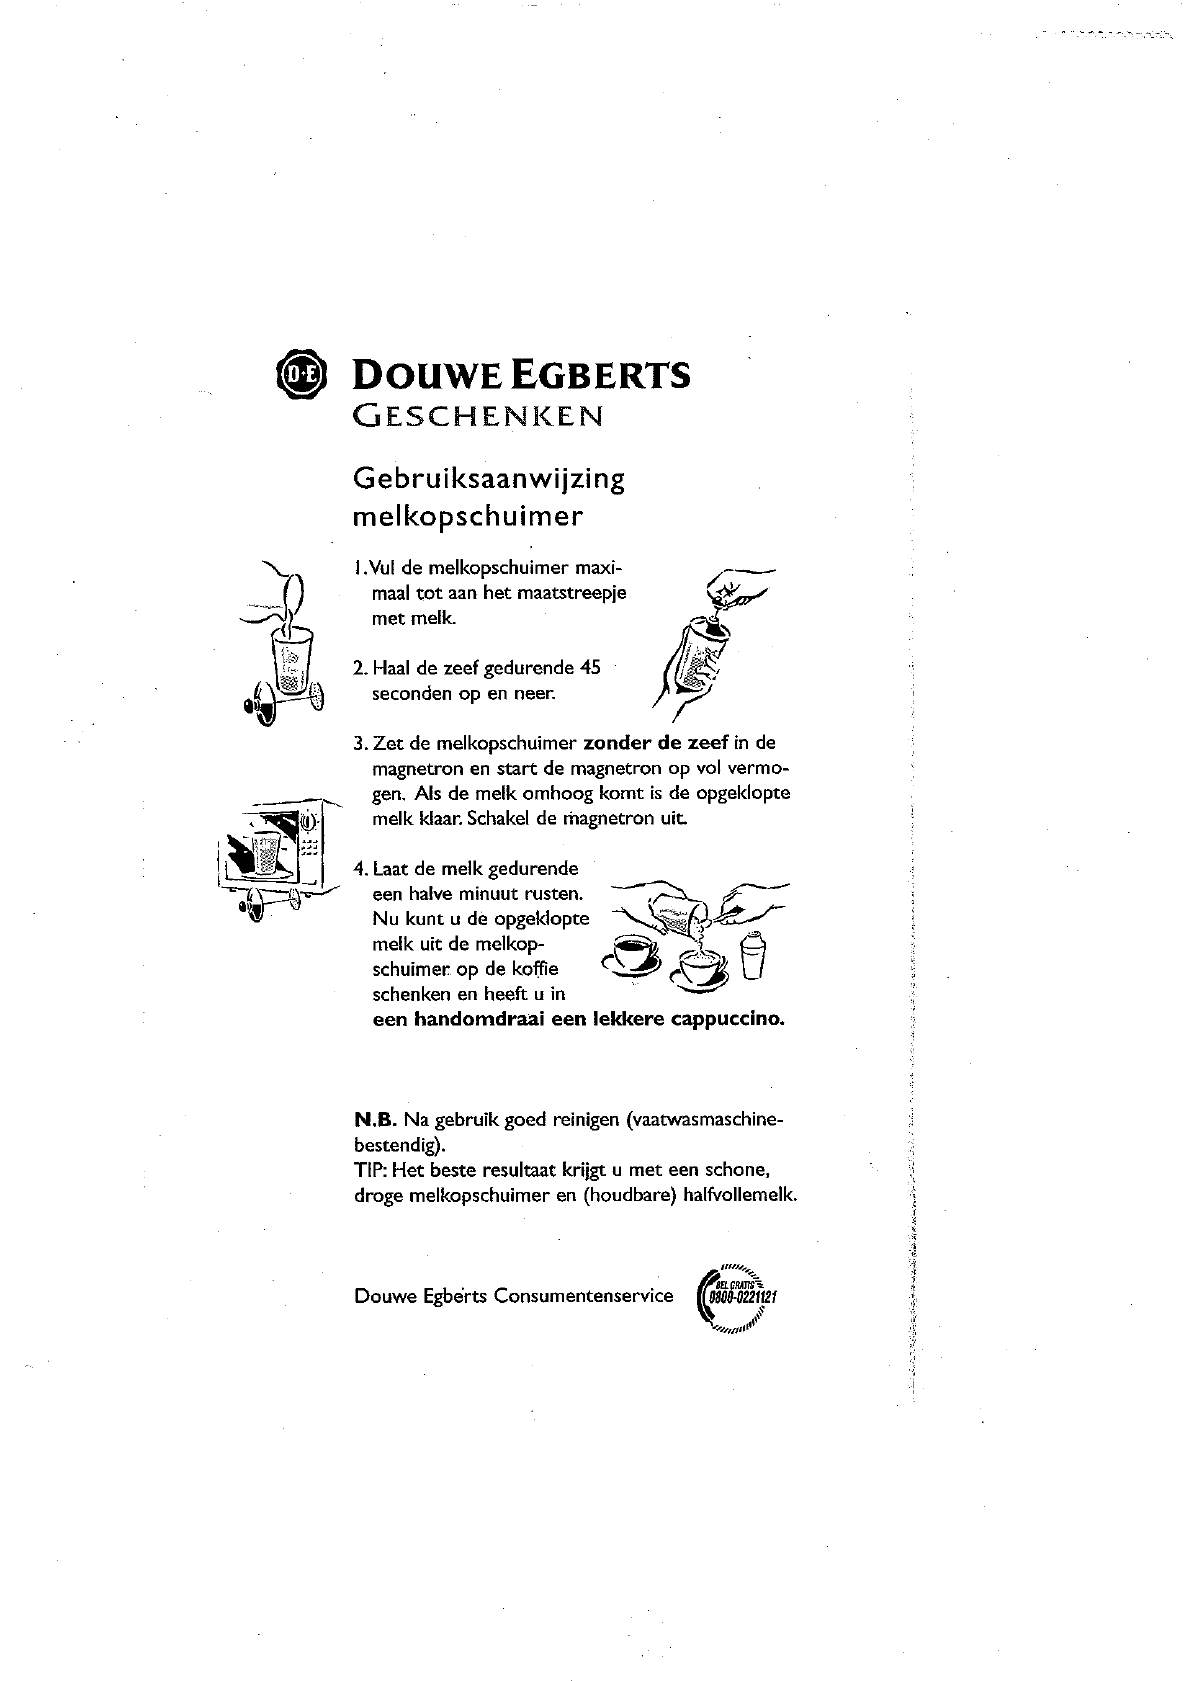 Boek segment attent Handleiding Douwe Egberts Melkopschuimer (pagina 1 van 1) (Nederlands)